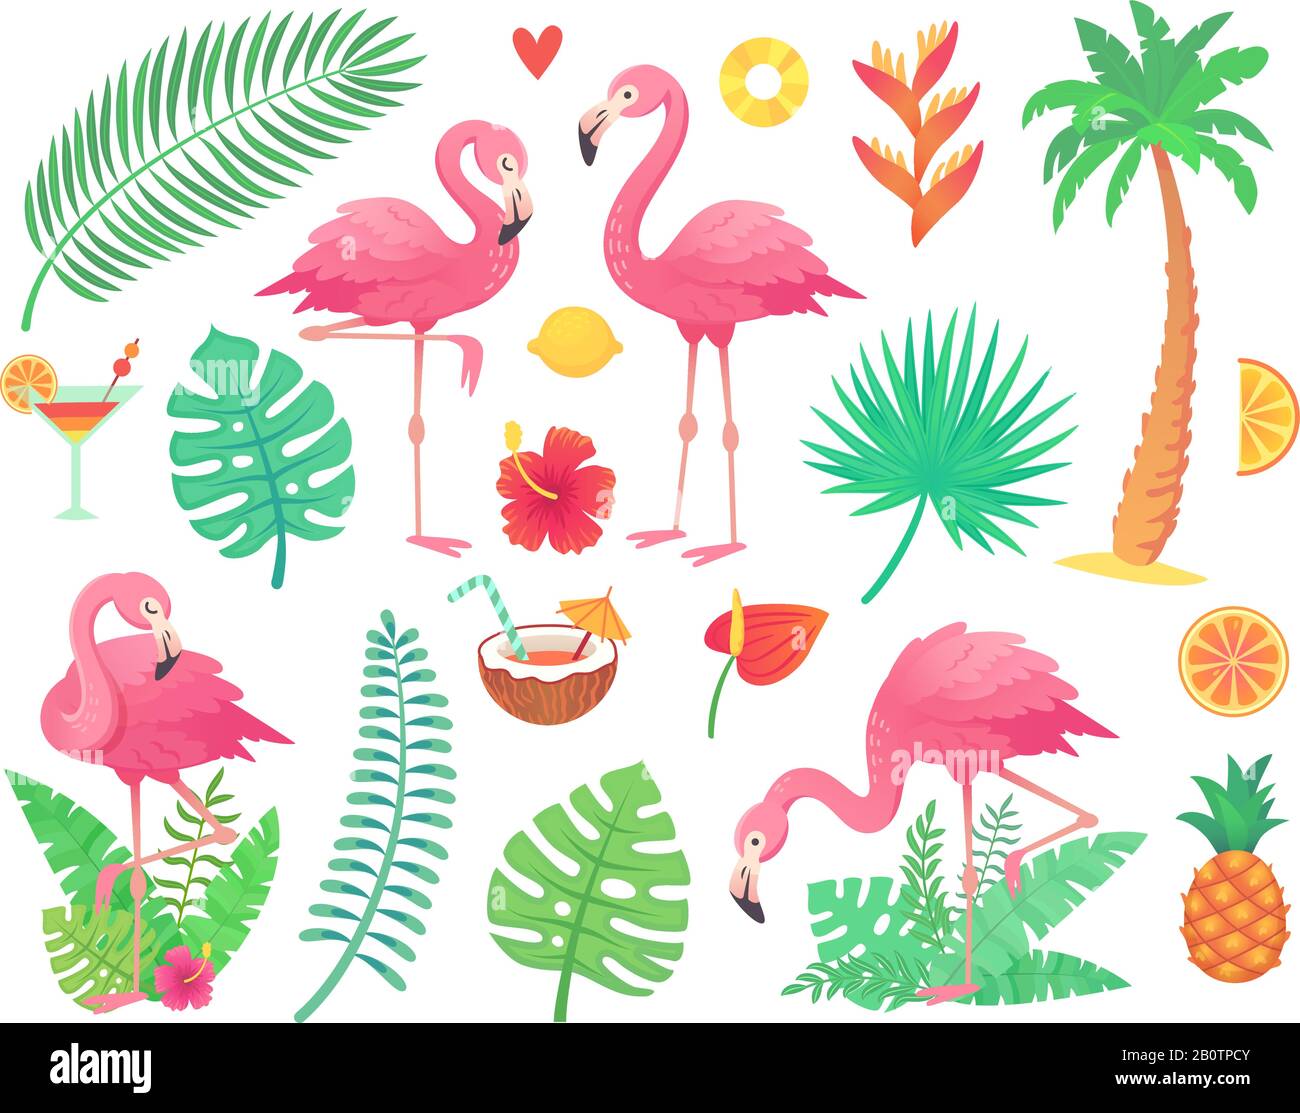 Rosa Flamingo und tropische Pflanzen. Strandpalme, afrikanische Pflanzenblätter, Regenwaldblume, Tropikpalmenblatt und rosiger Flamingos-Vektor-Satz Stock Vektor